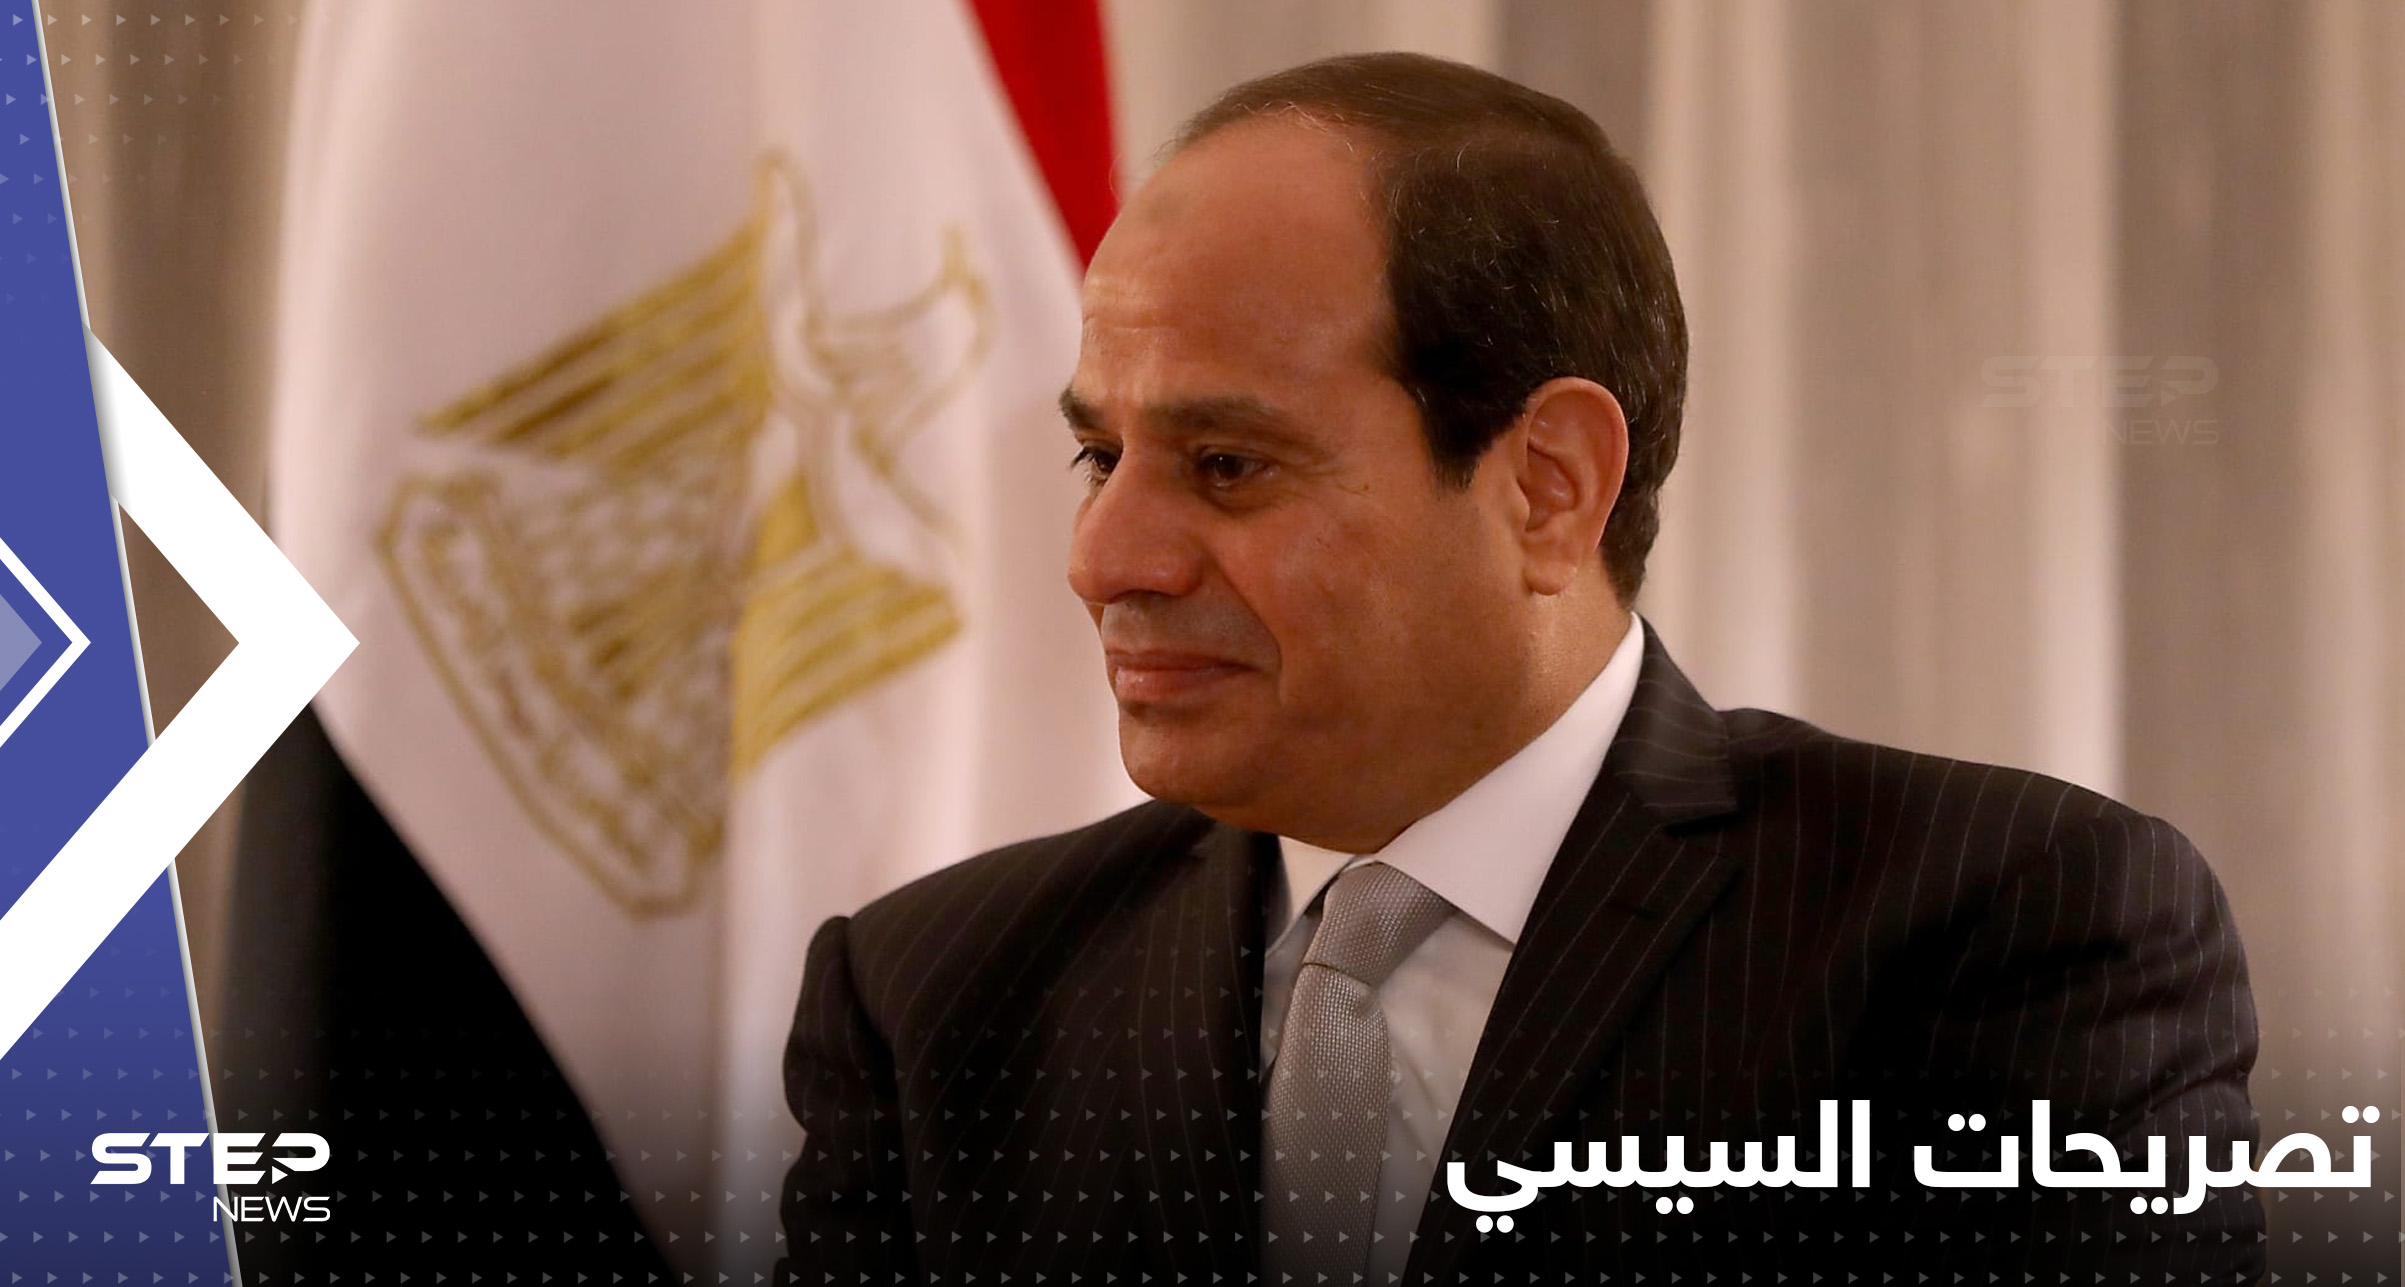 السيسي يقسم بالله ثلاث مرات حول أوضاع مصر: أنا لا أعتبر نفسي رئيساً بل مواطن منقذ